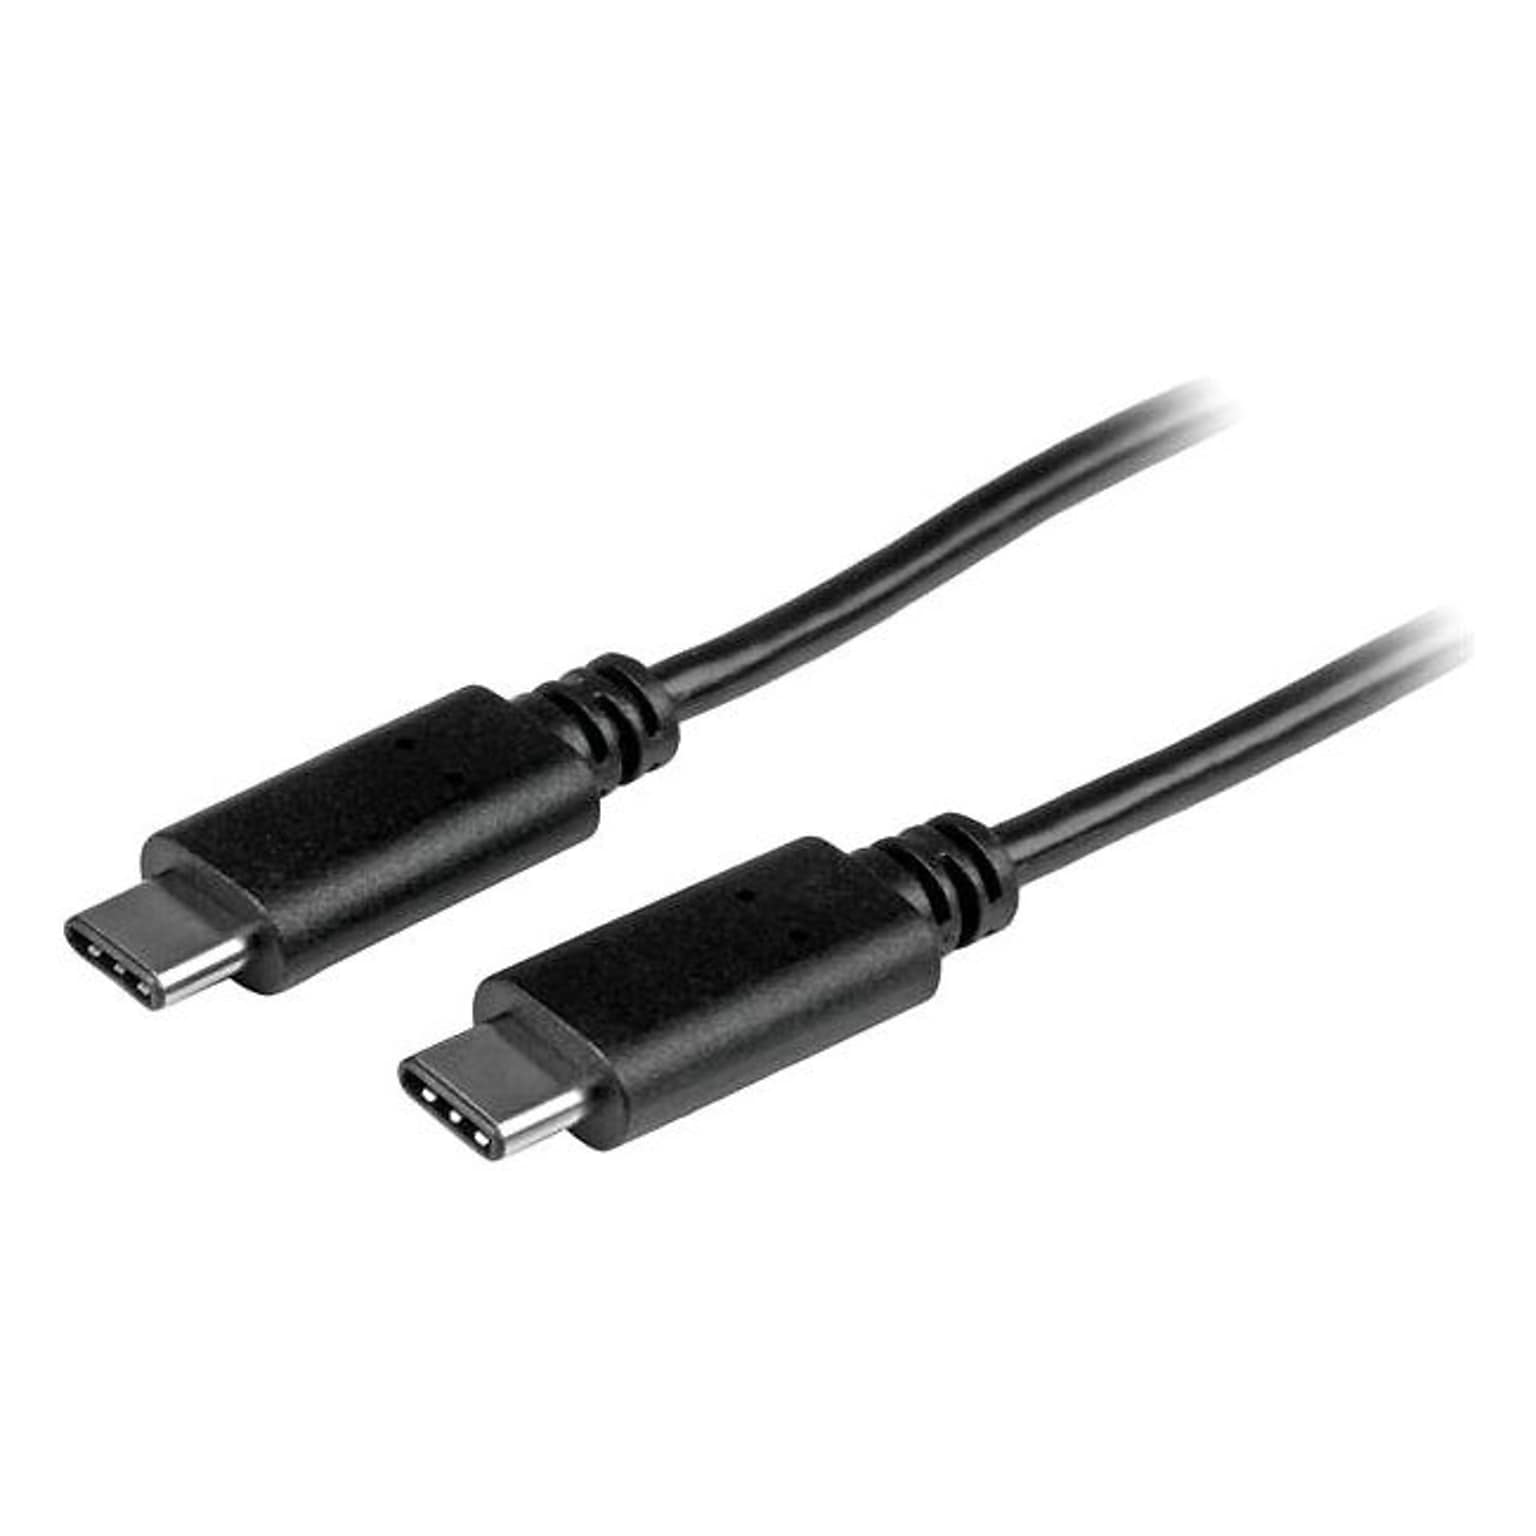 DNPStarTech.com 3.3 USB-C Cable; Male to Male, Black (USB2CC1M)